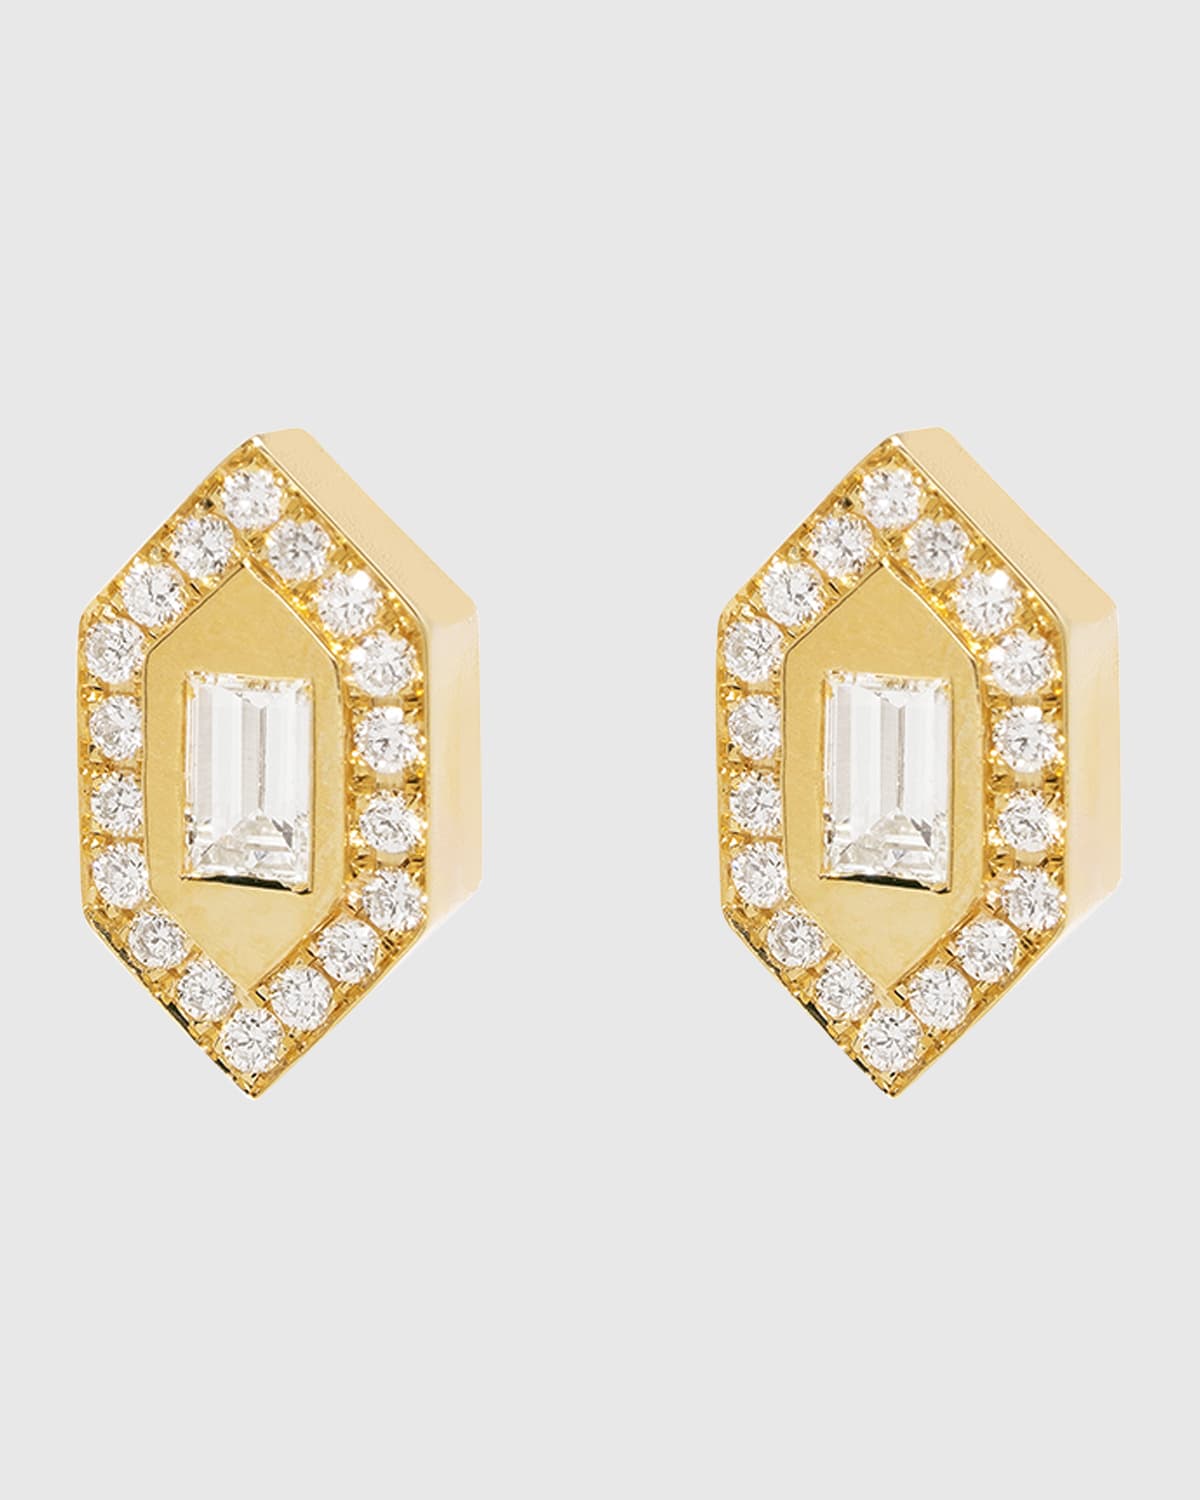 AZLEE Small Diamond Stud Earrings